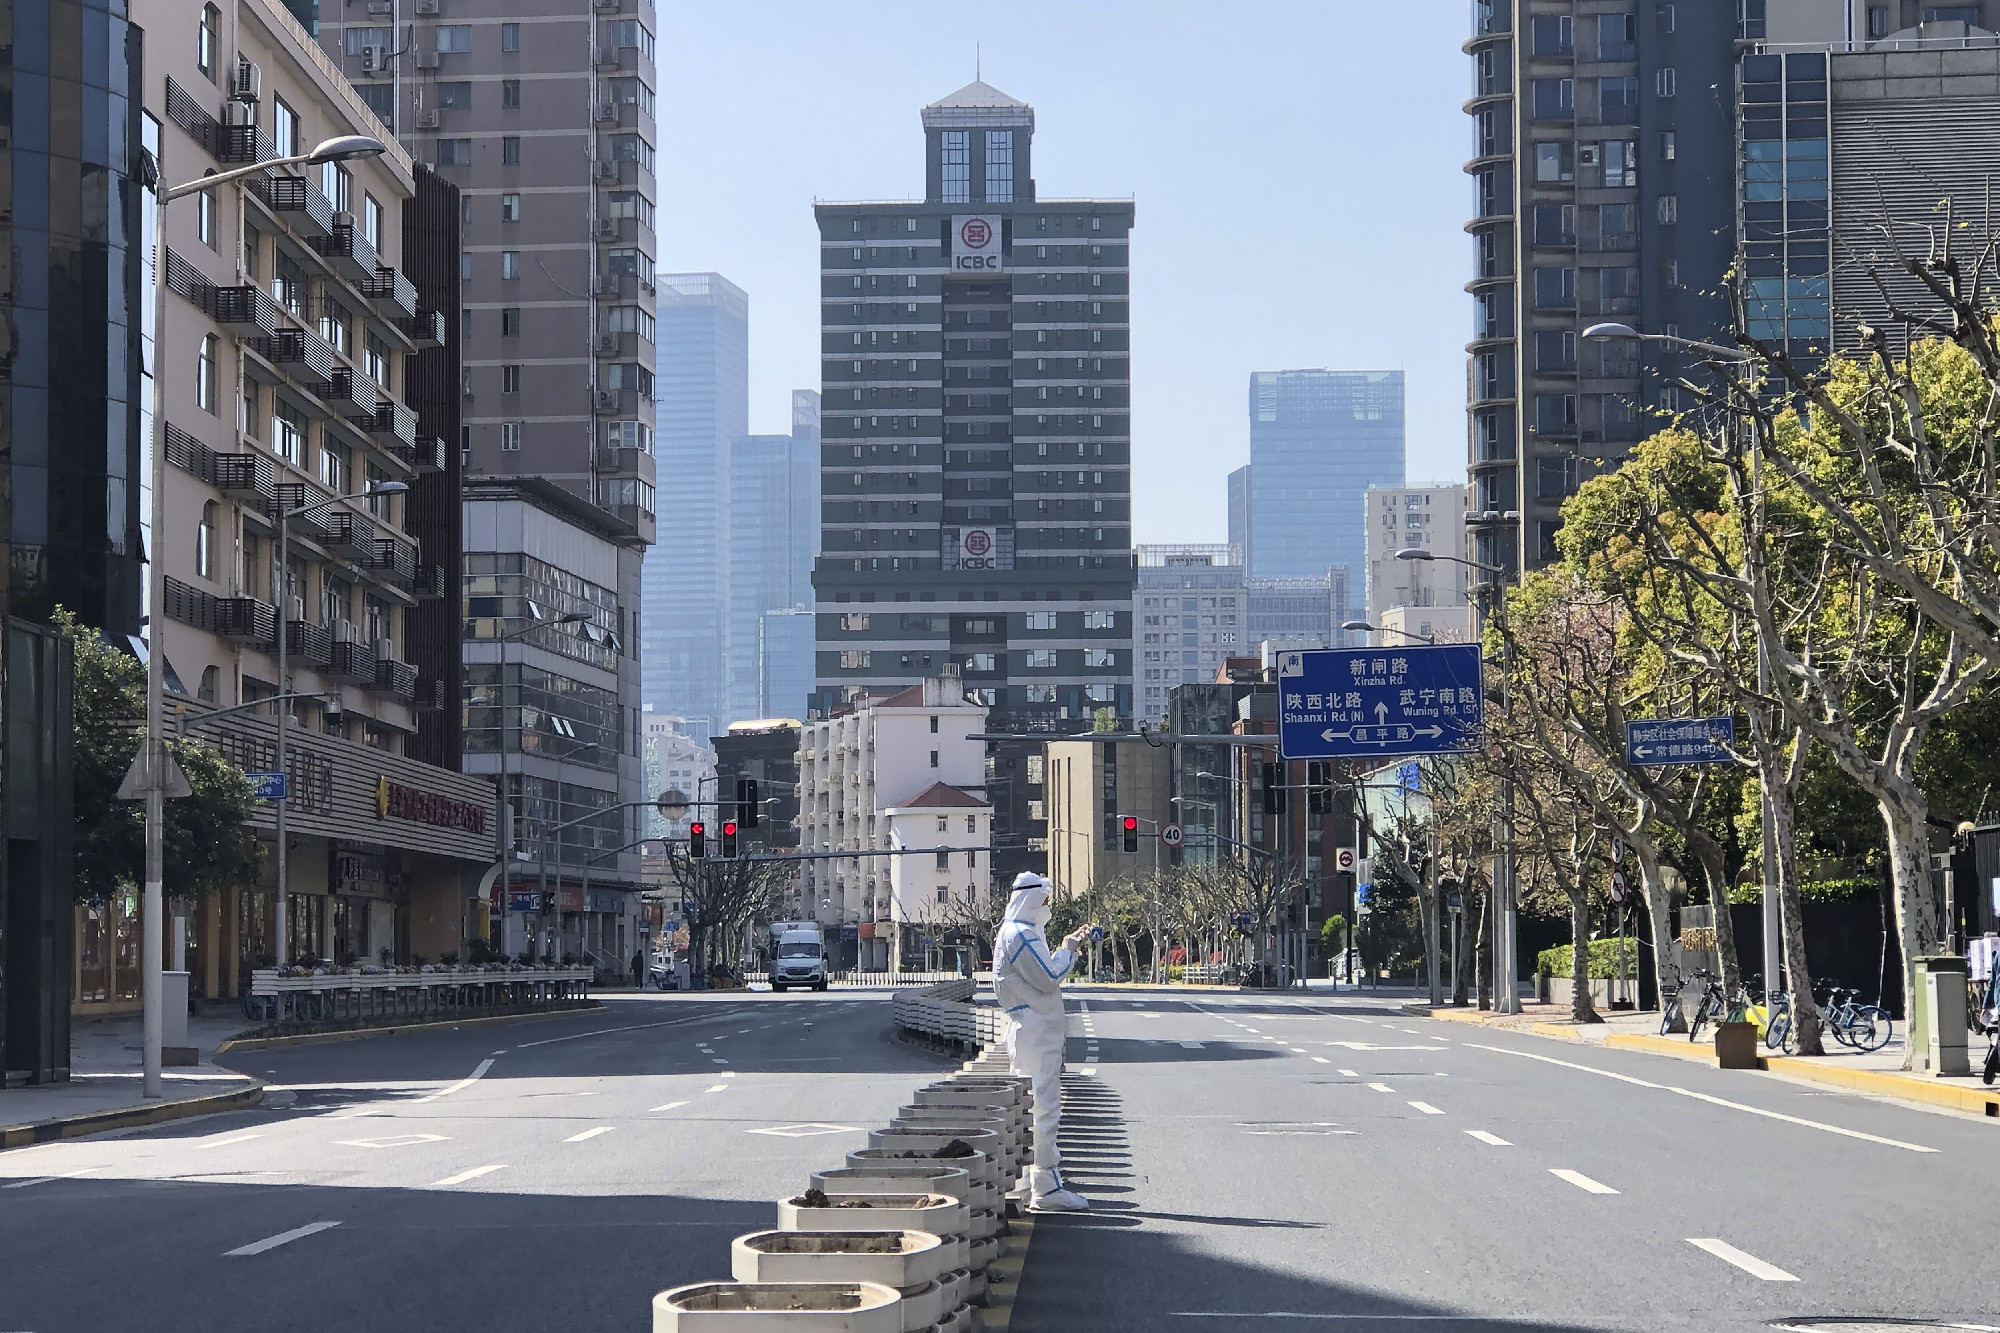 Visszatért a szinte embertelen szigor a koronavírus miatt lezárt Sanghajba